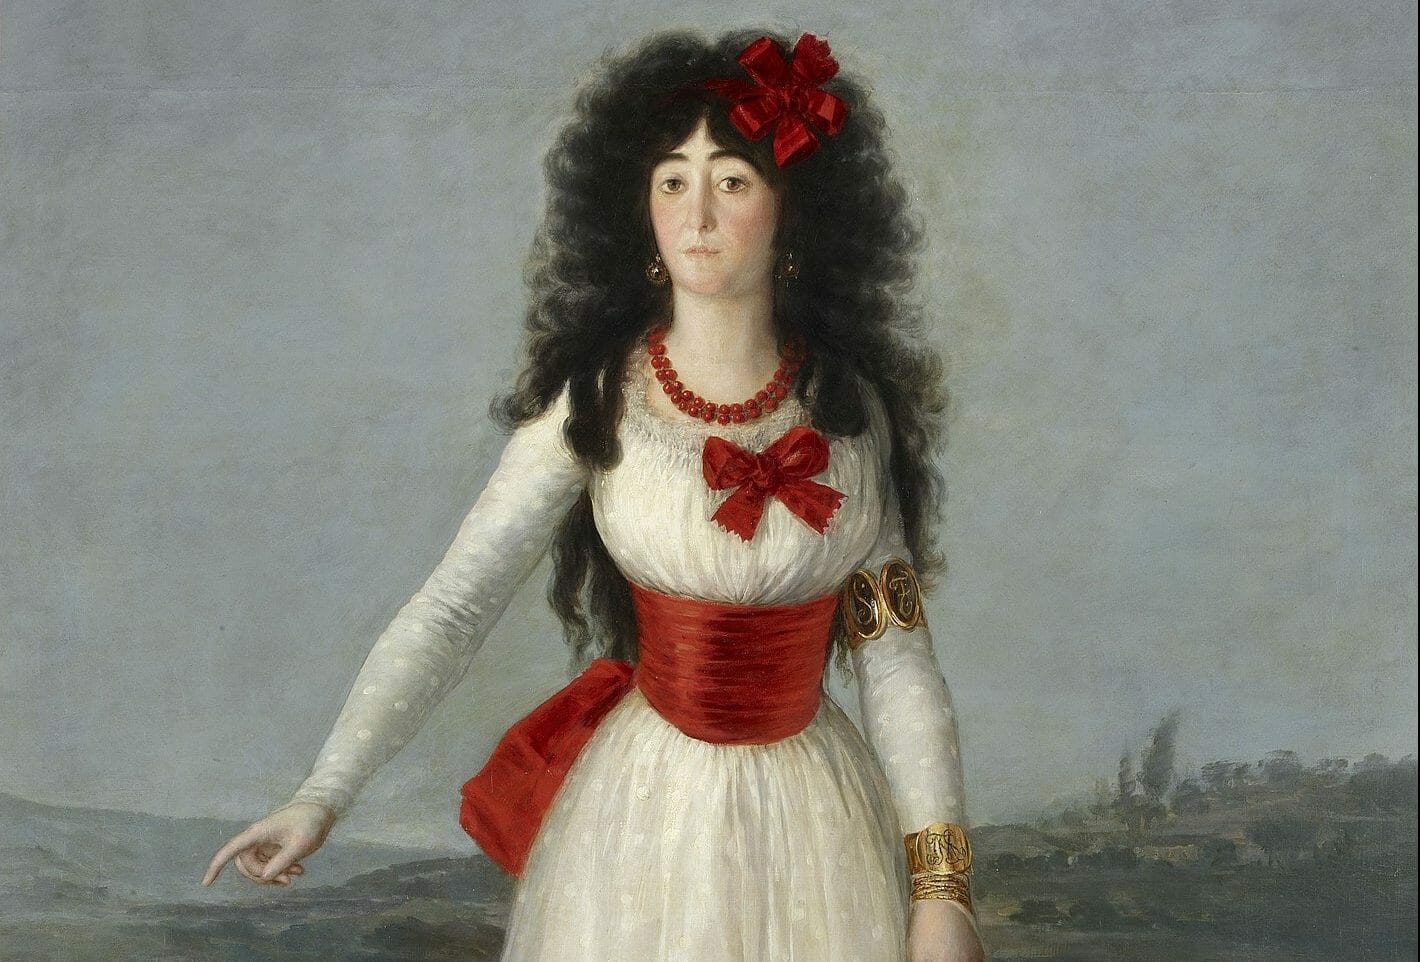 Goya's White Duchess | Fashion, naïve art, and magic realism